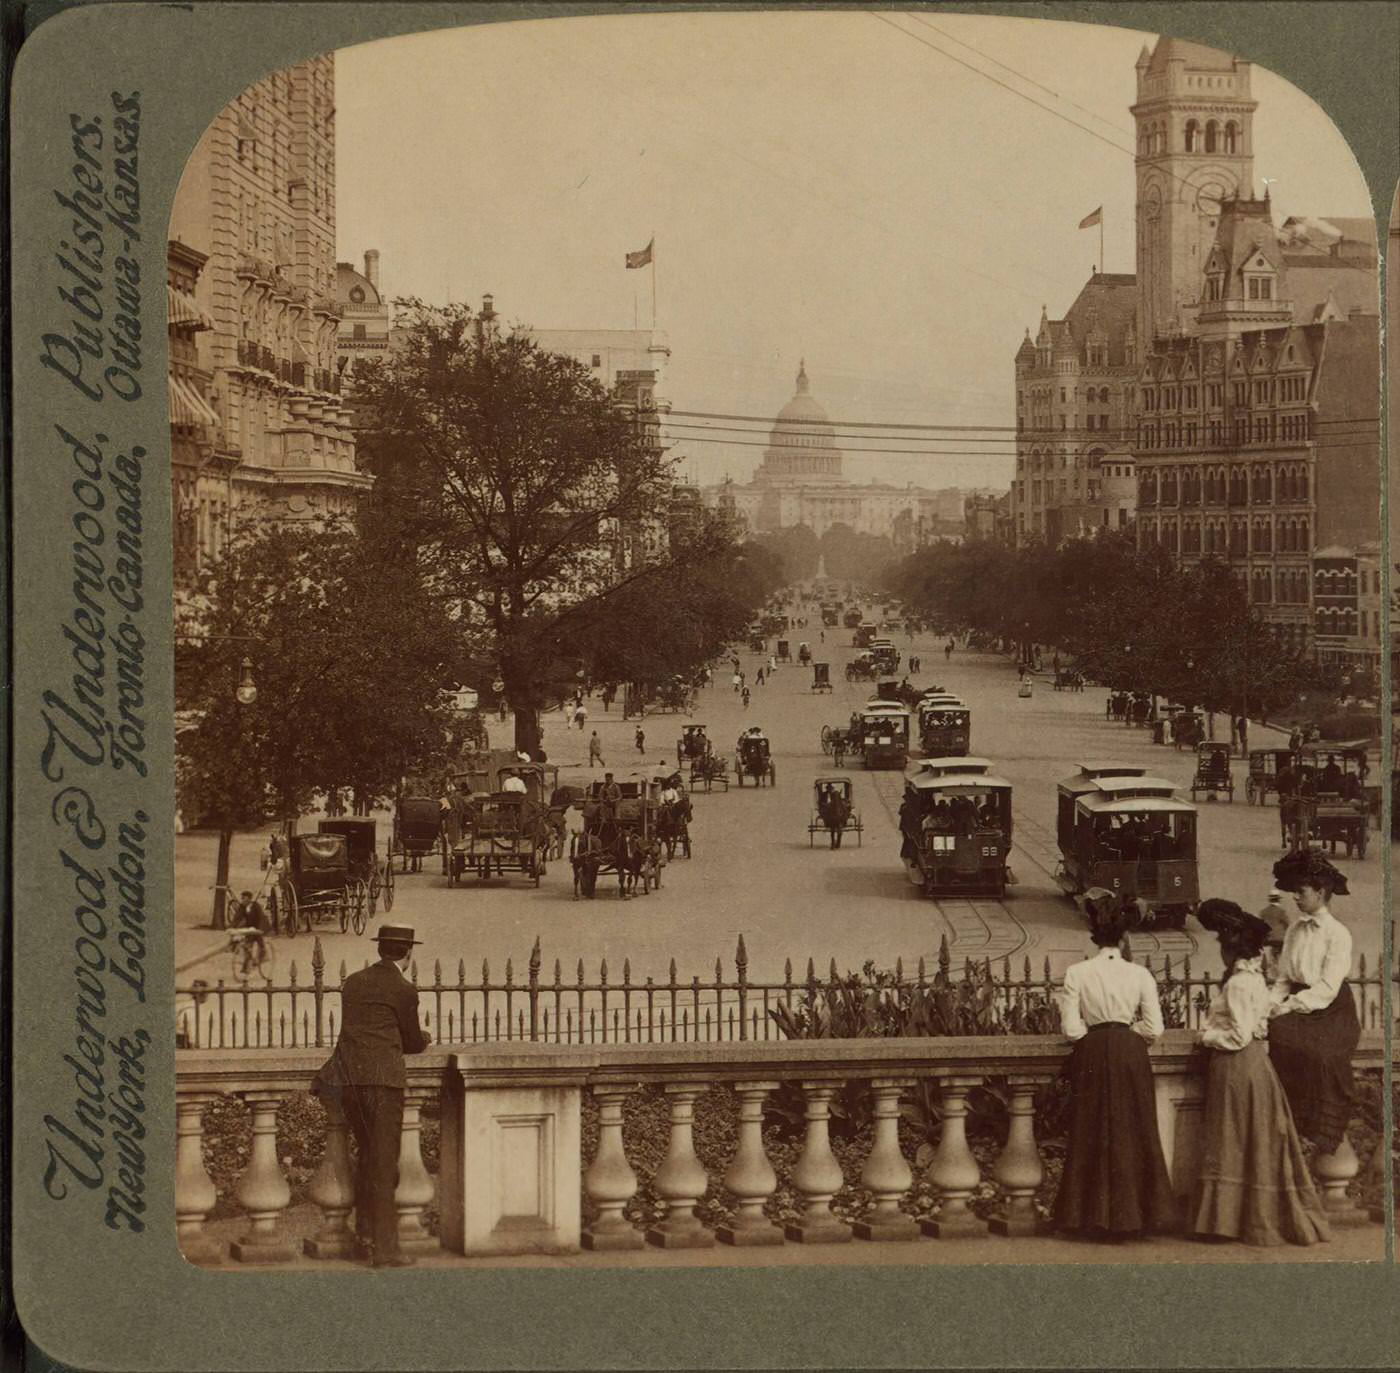 Pennsylvania Avenue, Treasury, S.E. United States Capitol, Washington, D.C, 1865